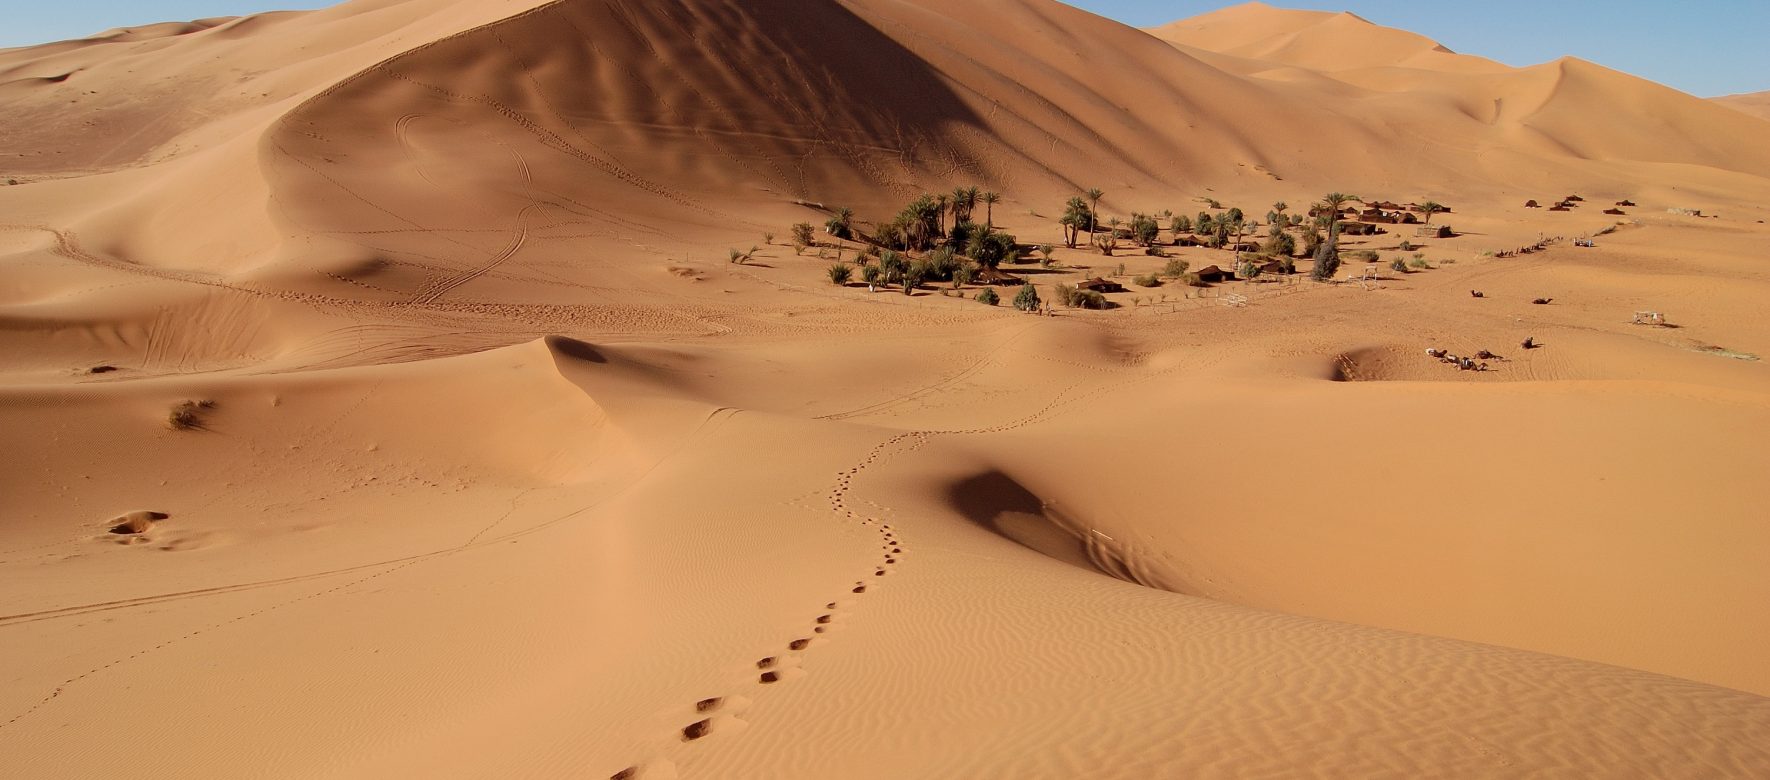 Comment le Maroc veut miser sur le tourisme durable et responsable